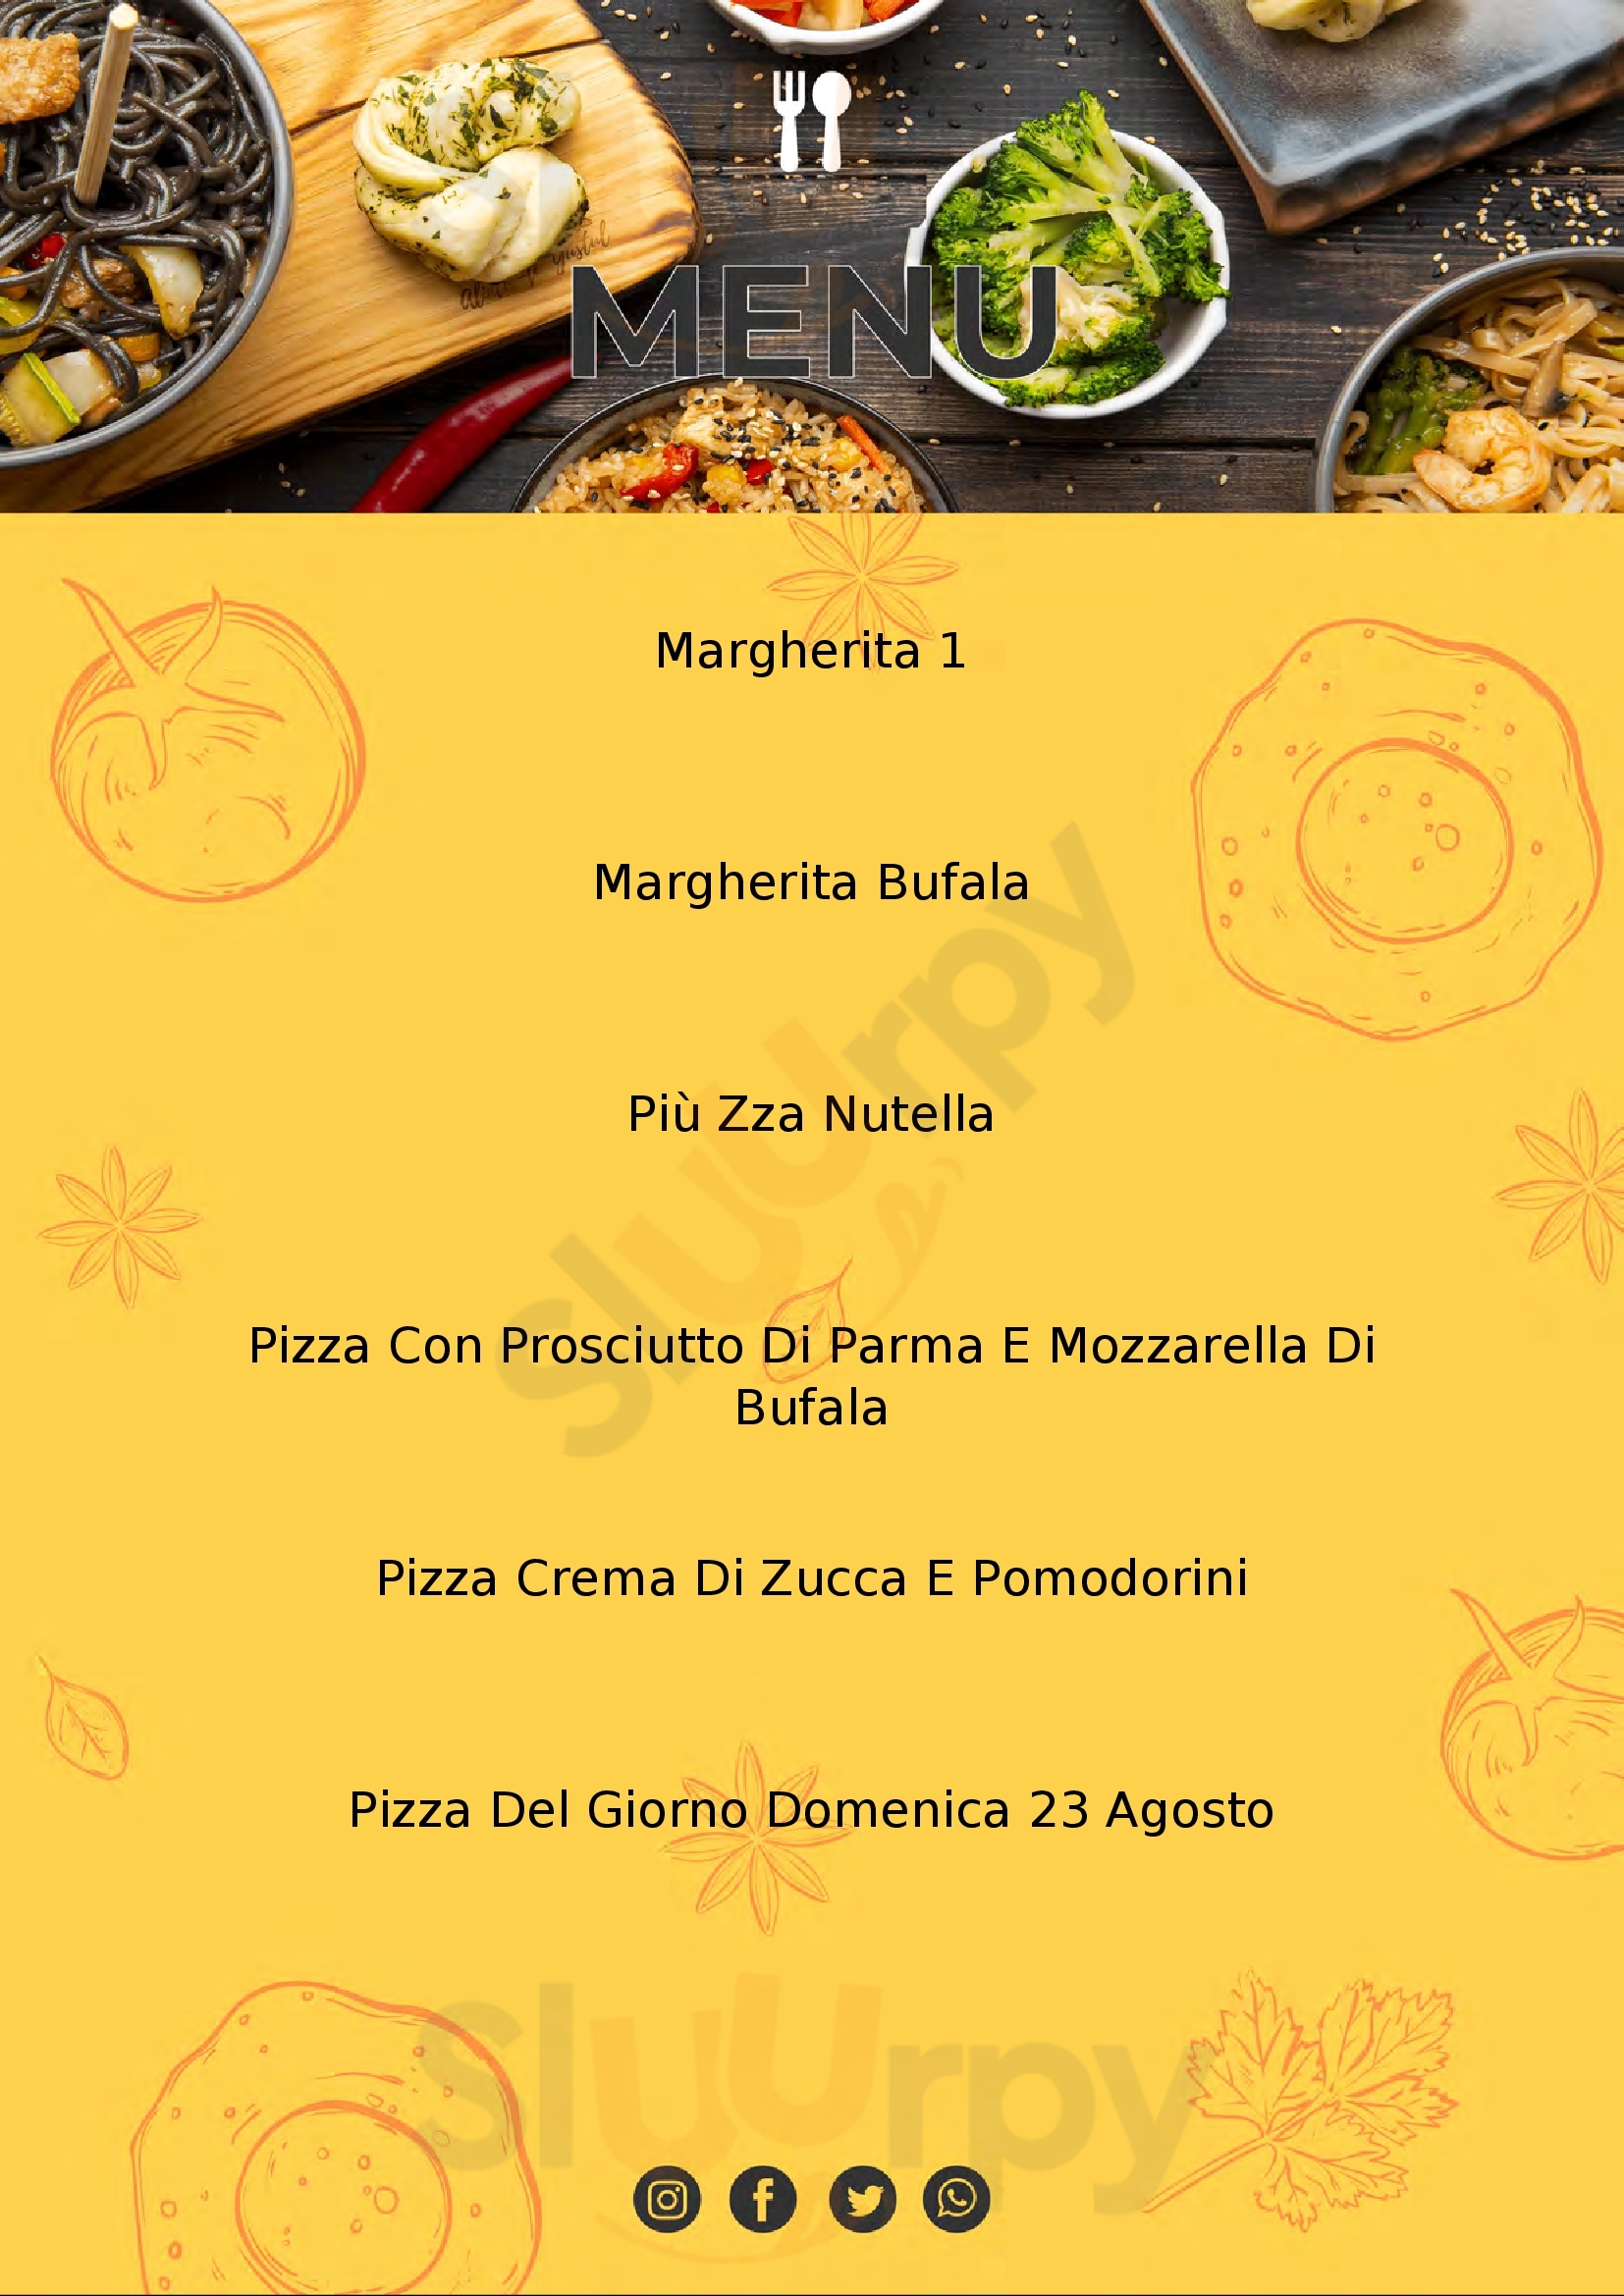 Pizzeria Ciro's Ferrara menù 1 pagina